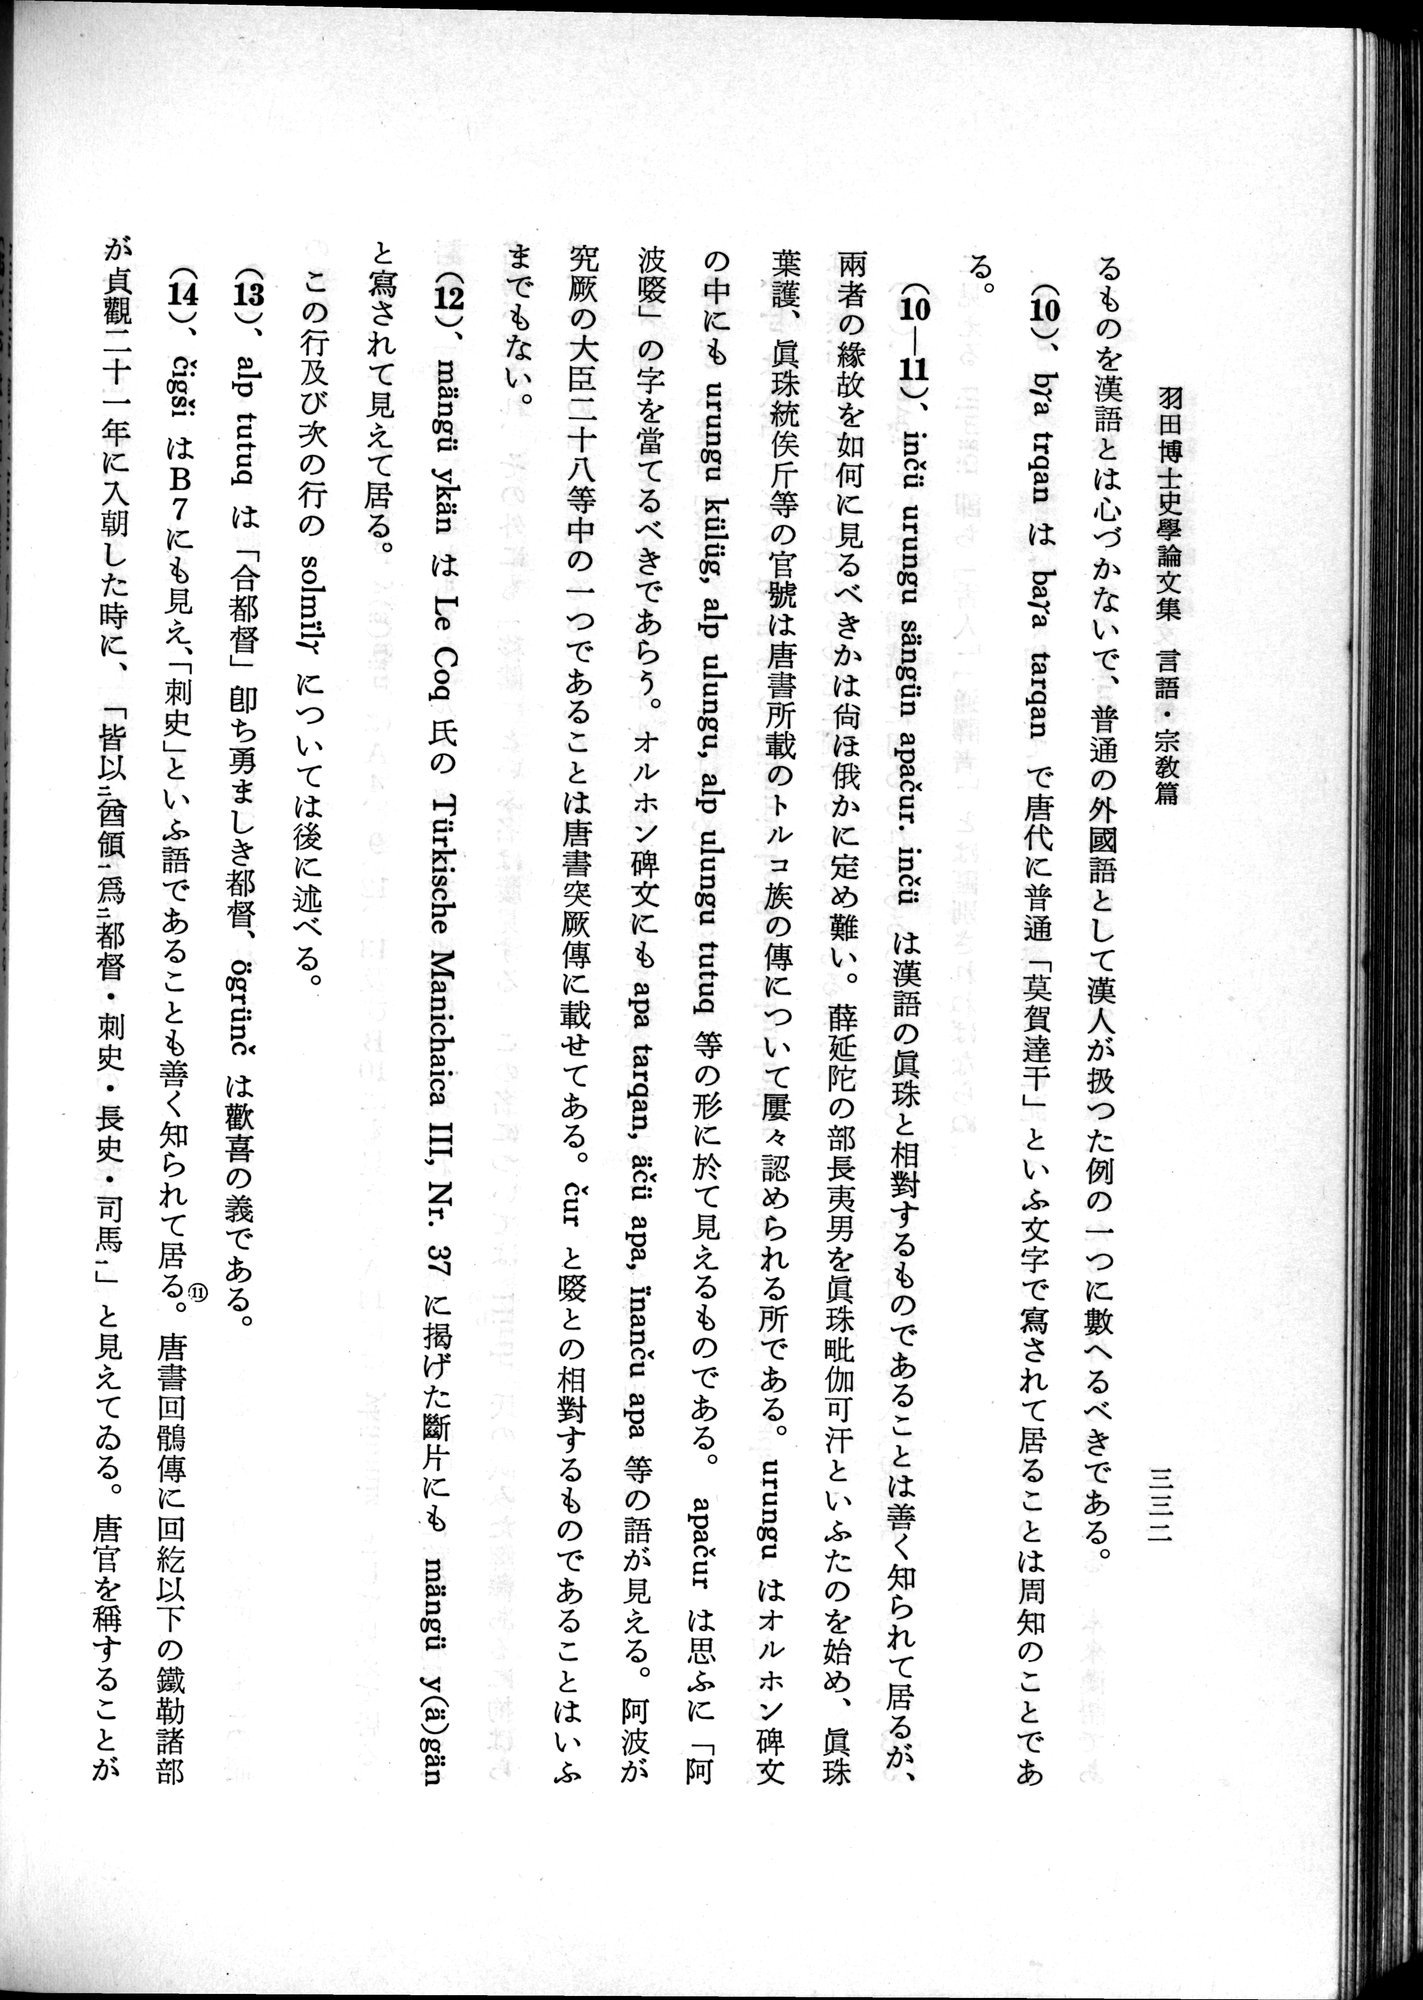 羽田博士史学論文集 : vol.2 / Page 394 (Grayscale High Resolution Image)